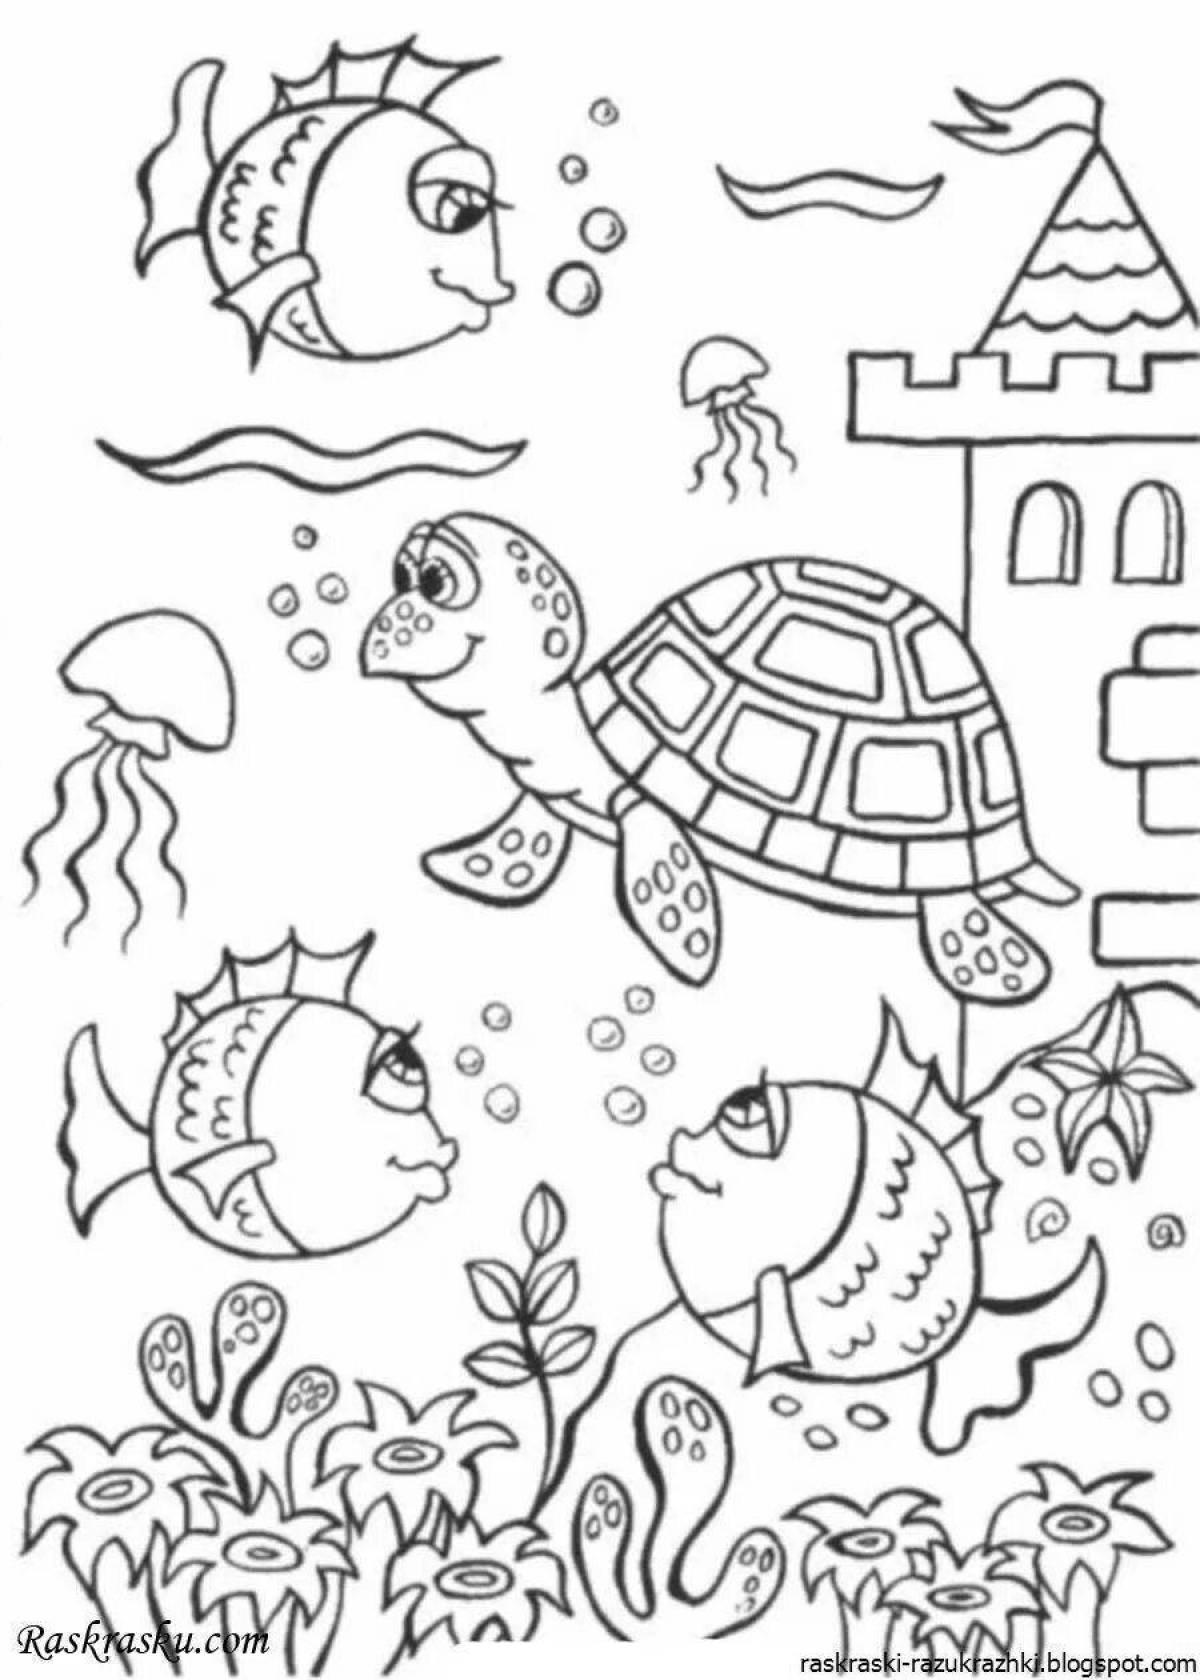 Great ocean coloring book for kids